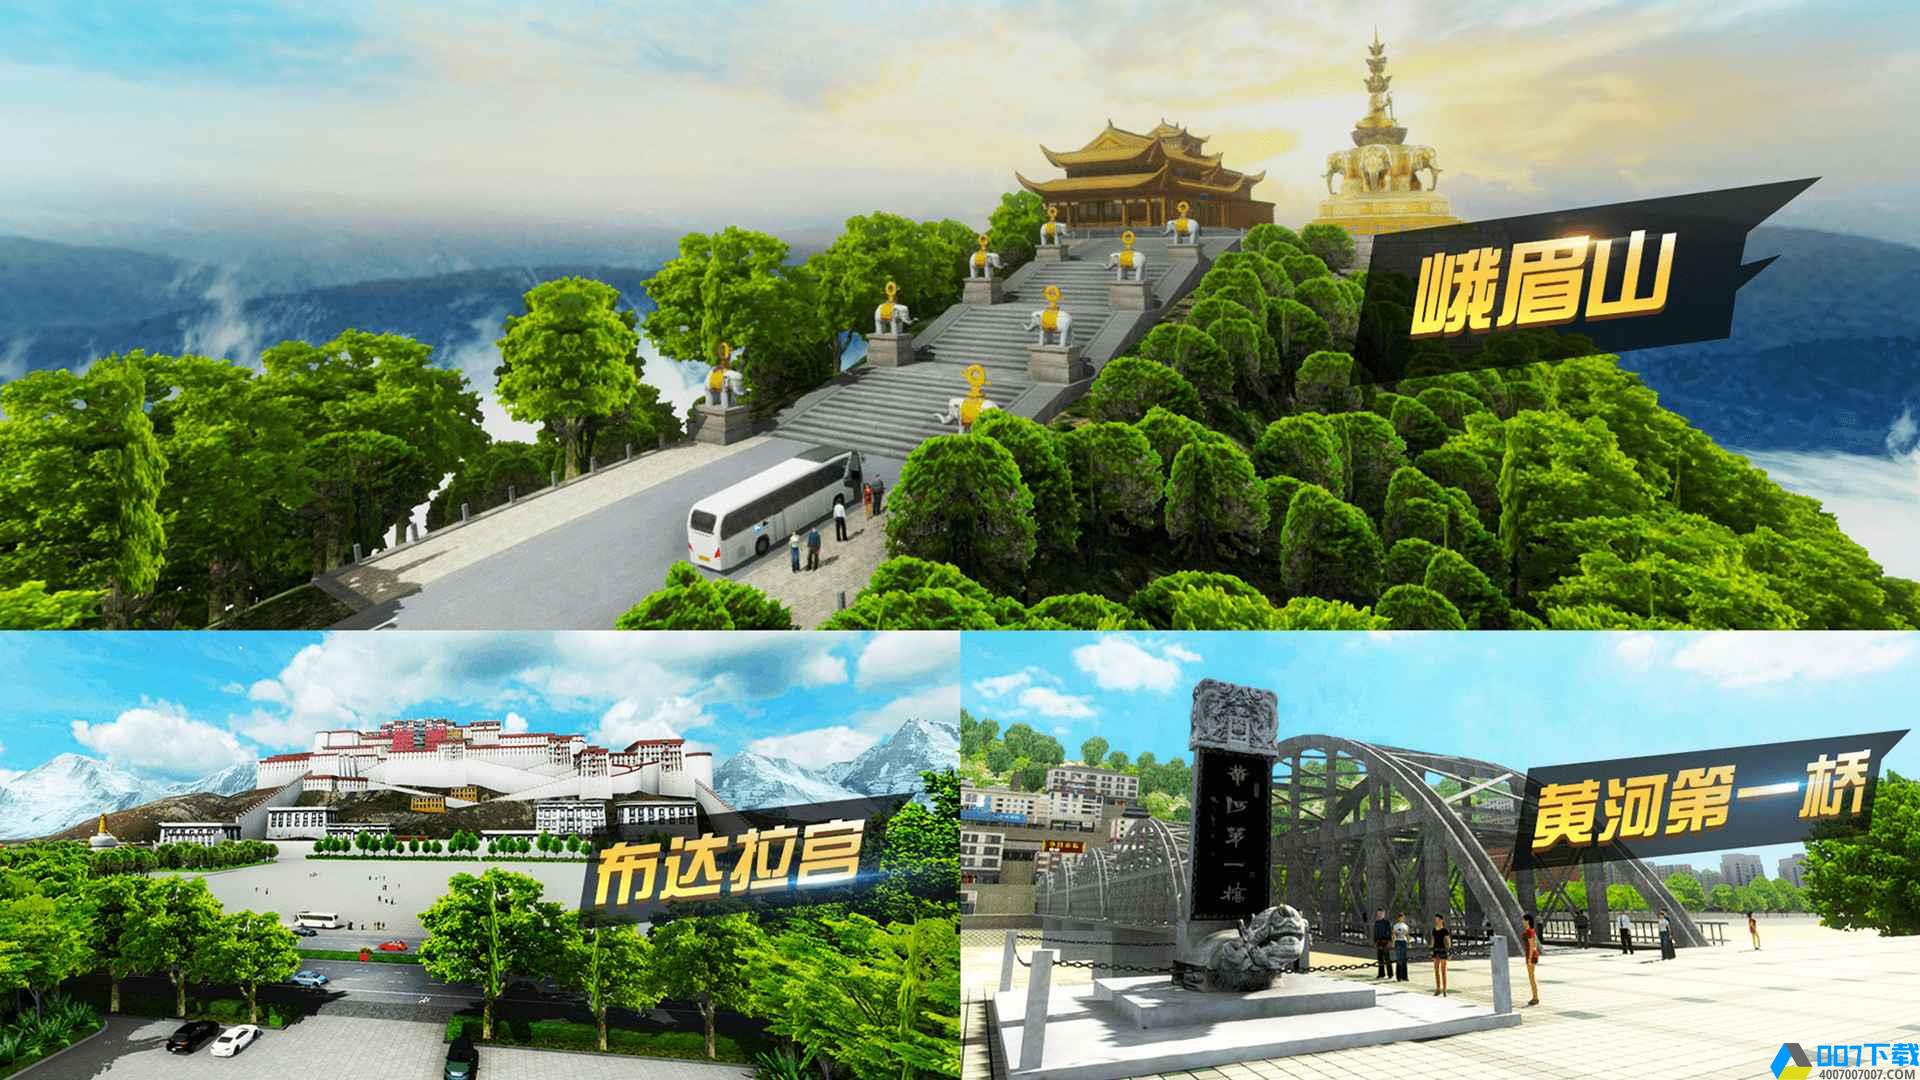 遨游中国卡车模拟器手游_遨游中国卡车模拟器2021版最新下载